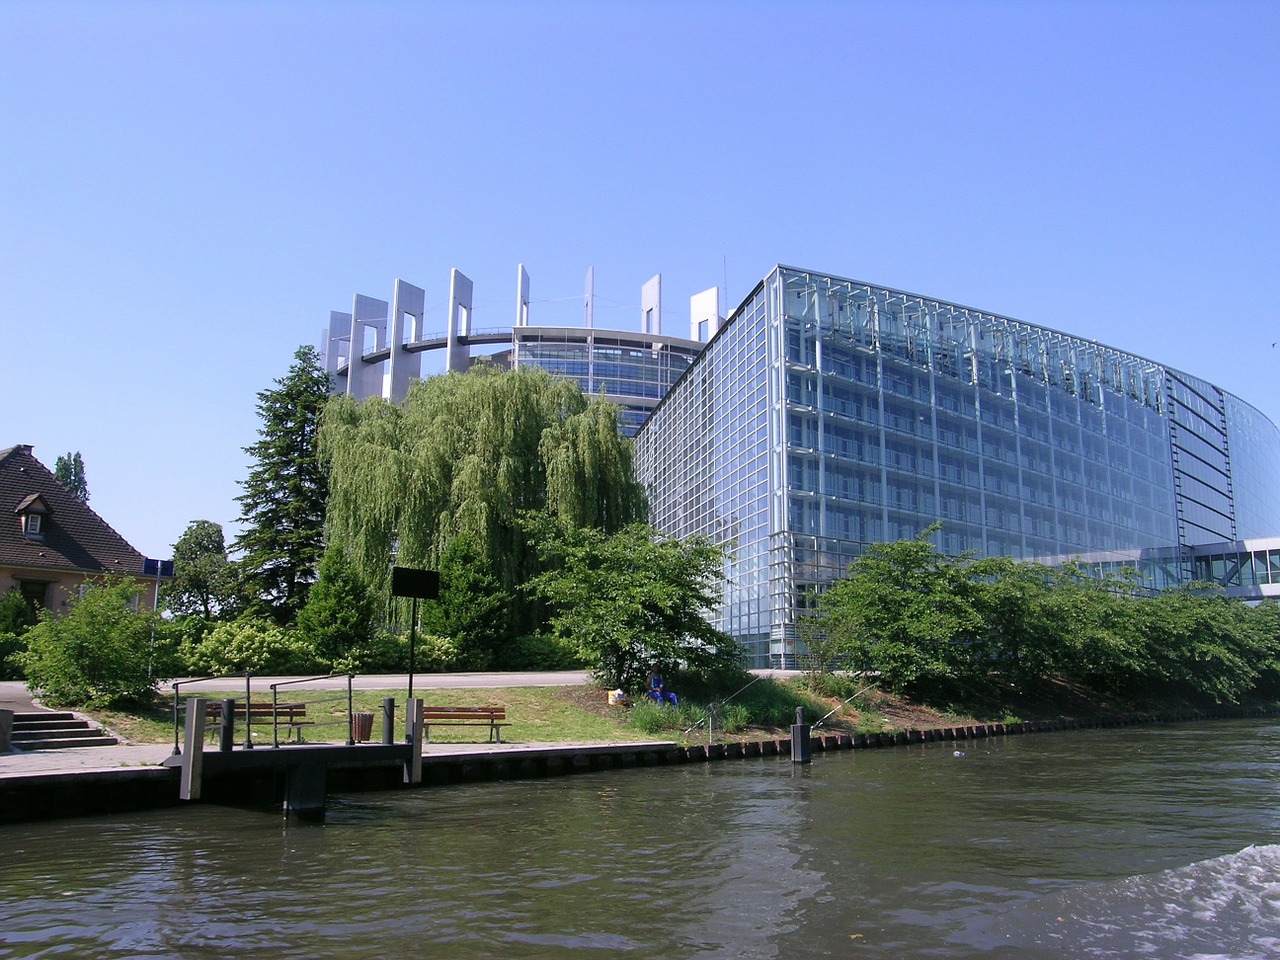 Η έδρα του Ευρωκοινοβουλίου στο Στρασβούργο © Pixabay